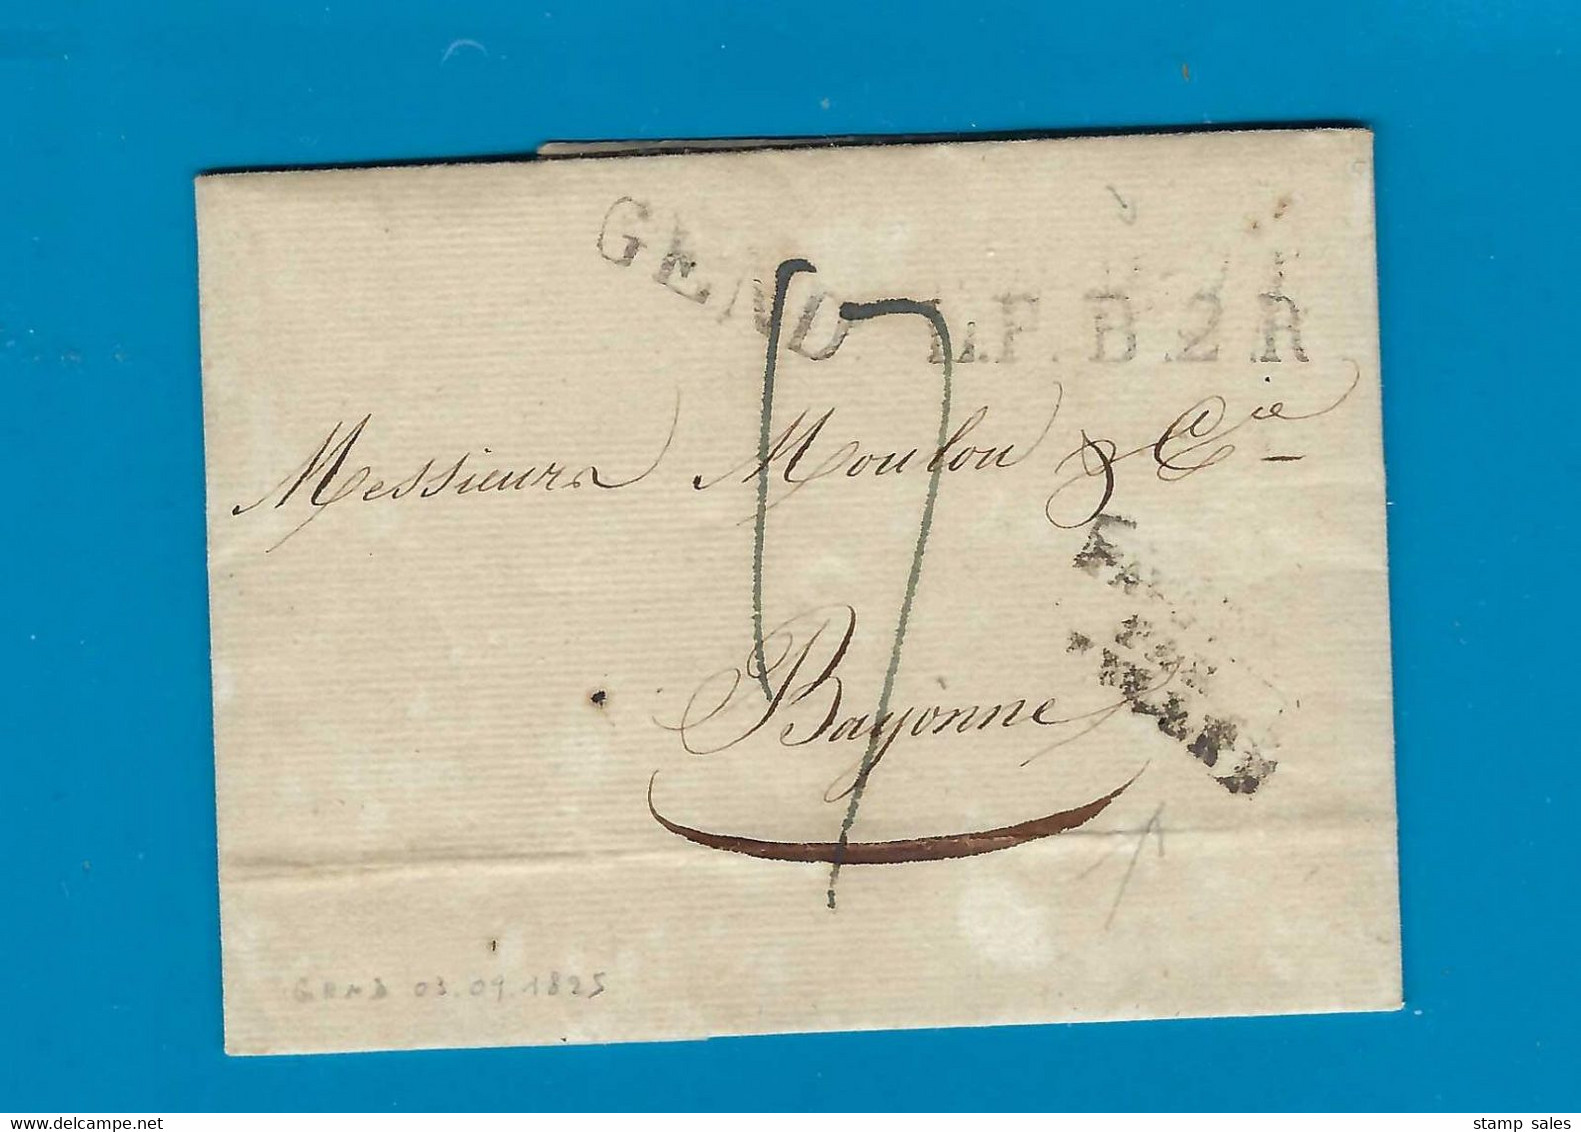 België Voorloper Met Inhoud Vanuit Gand Naar Bayonne (Frankrijk) 3/09/1825 UNG - 1815-1830 (Hollandse Tijd)